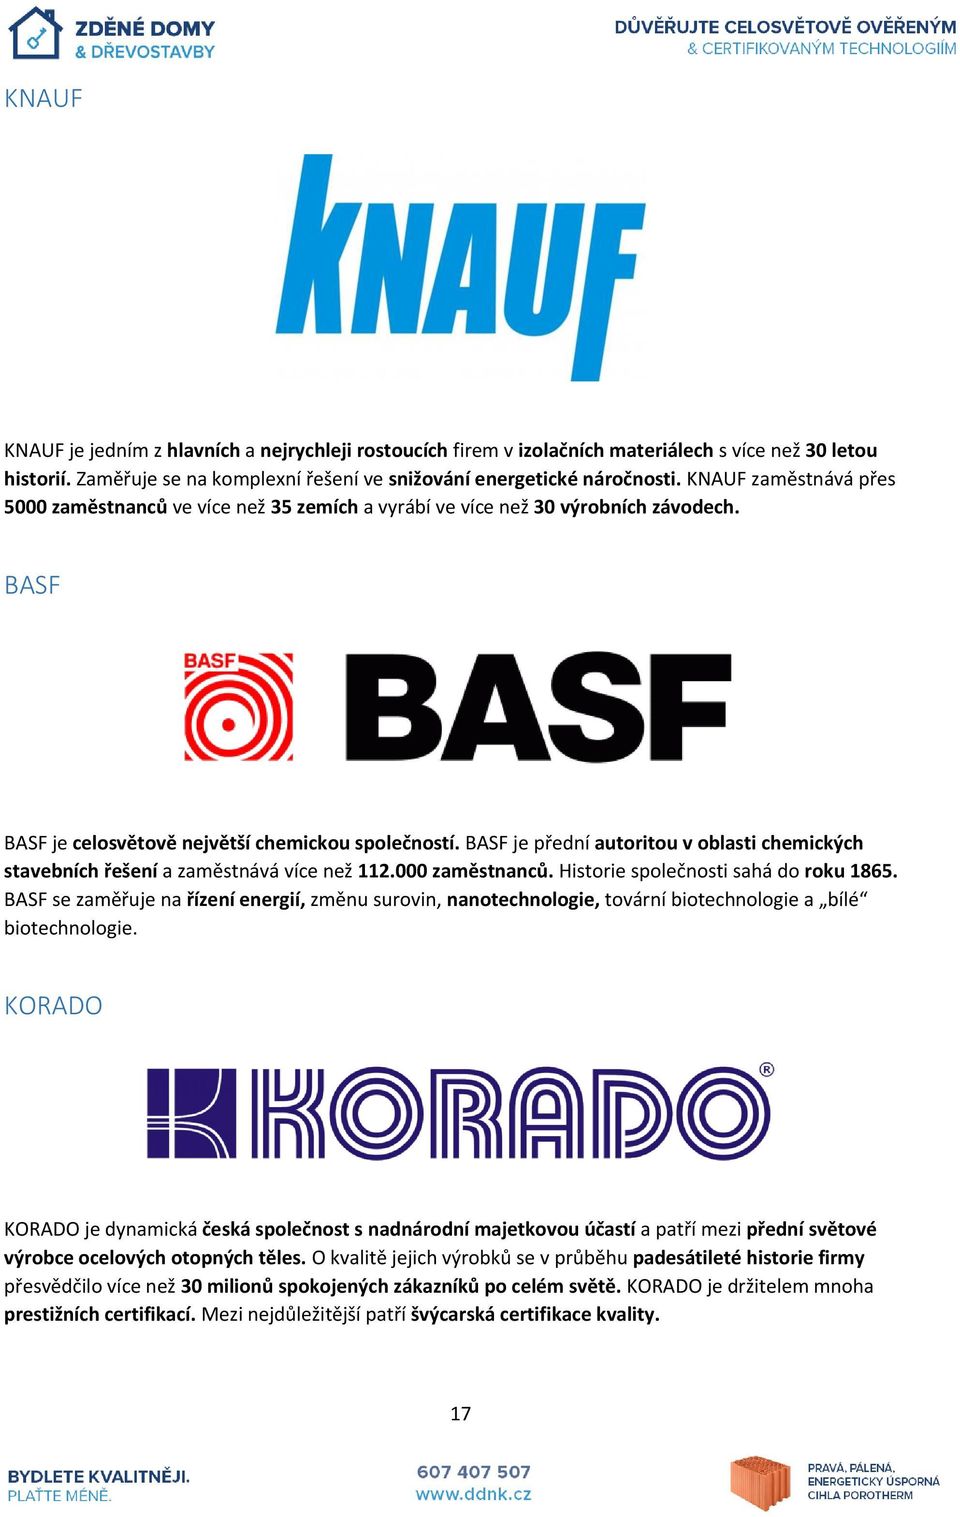 BASF je přední autoritou v oblasti chemických stavebních řešení a zaměstnává více než 112.000 zaměstnanců. Historie společnosti sahá do roku 1865.